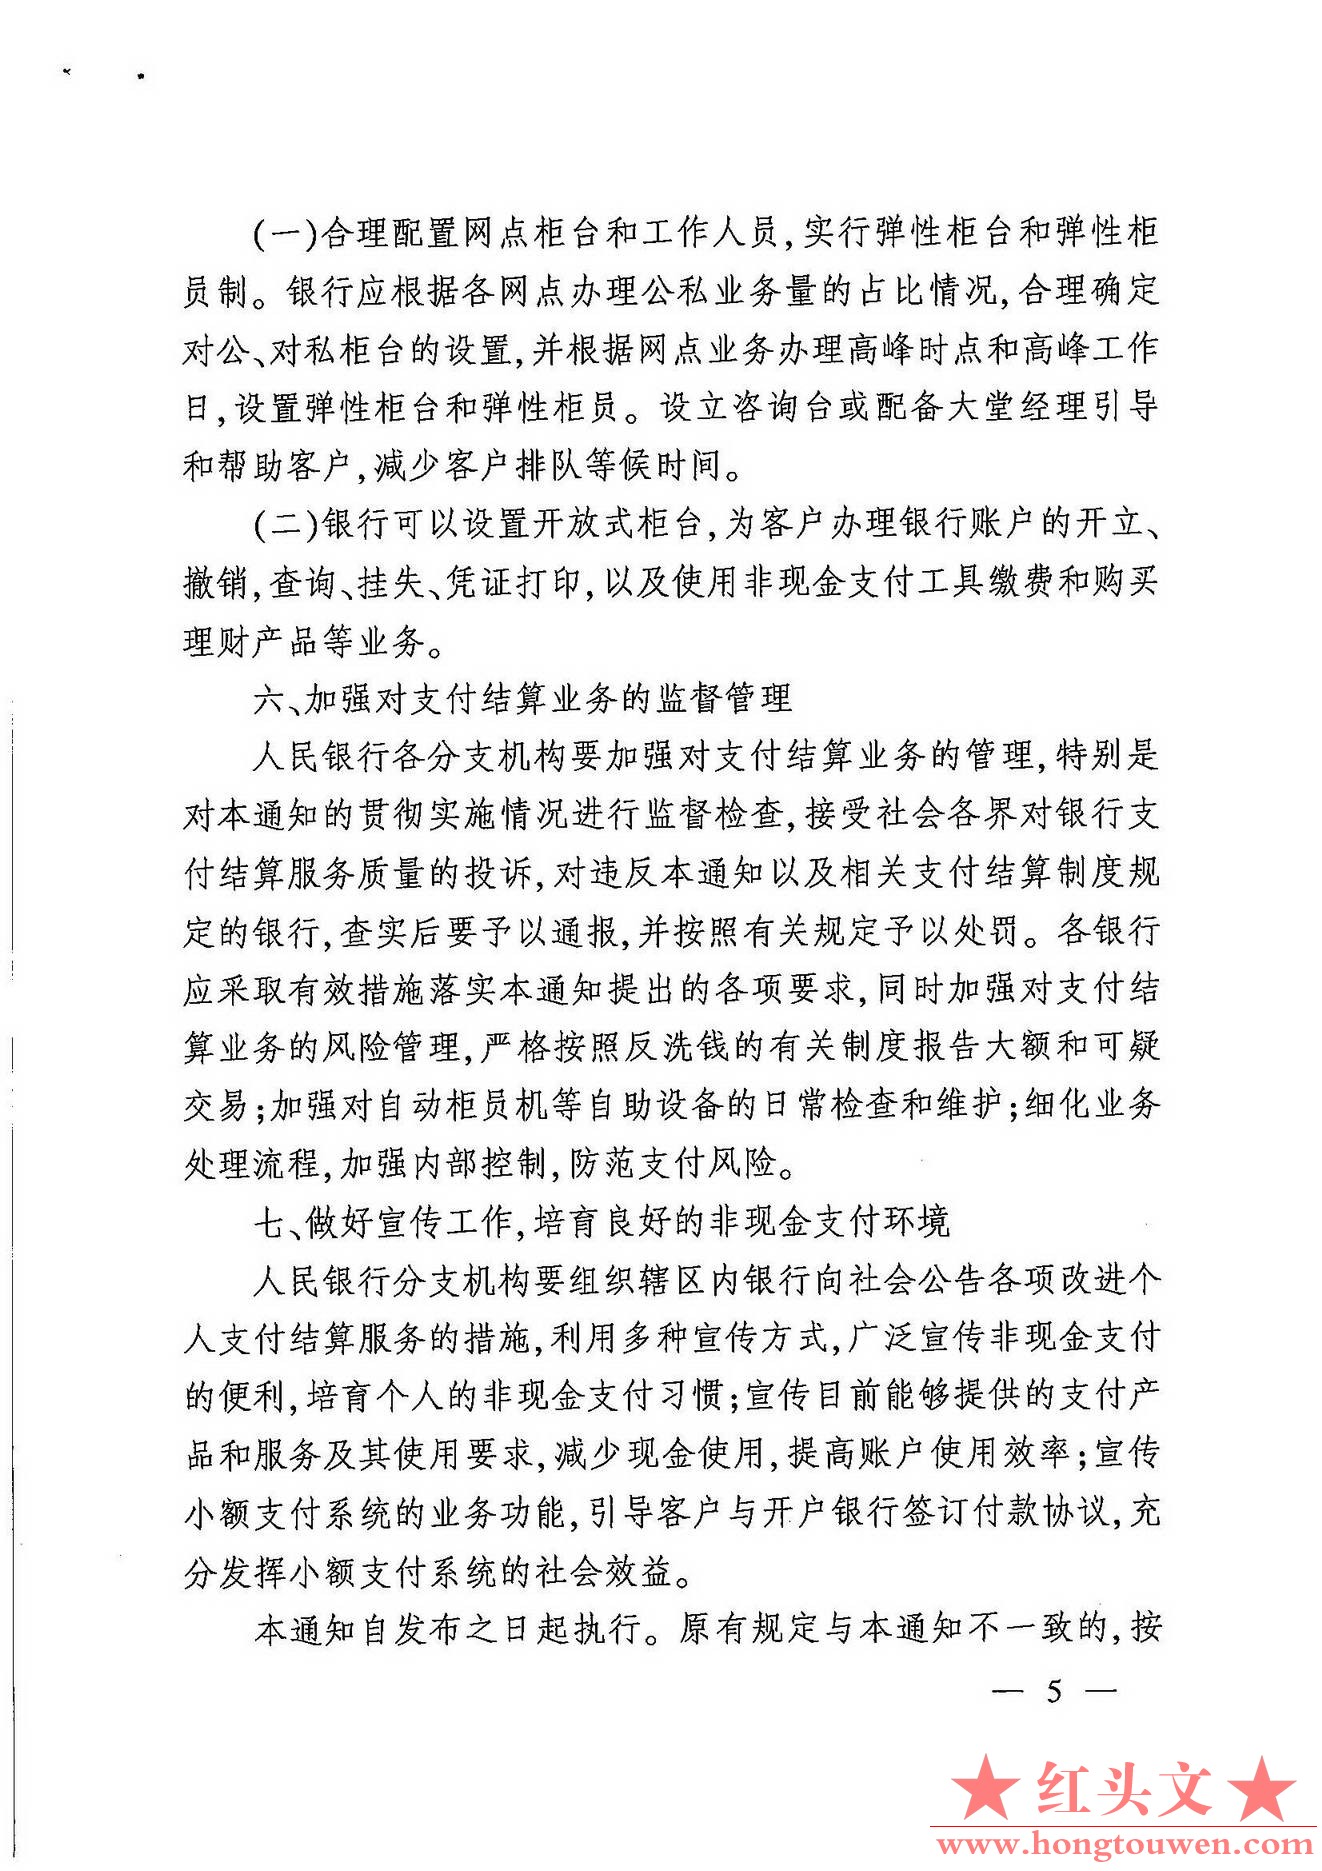 银发[2007]154号-中国人民银行关于改进个人支付结算服务的通知_页面_5.jpg.jpg